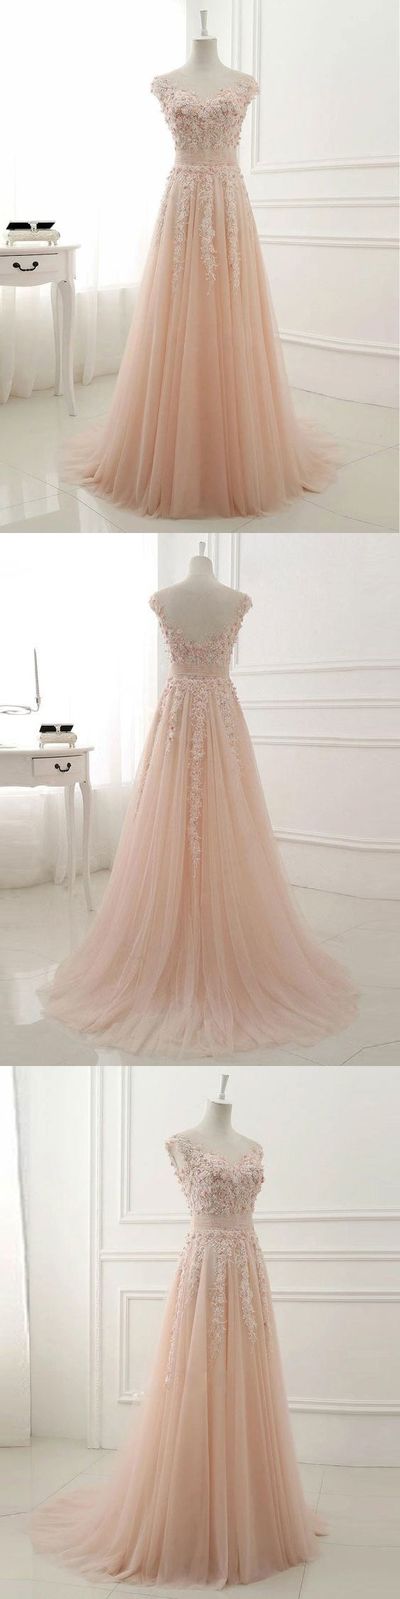 A-line Lace Appliqued Illusion Neck Long Simple Prom Dresses,p2192